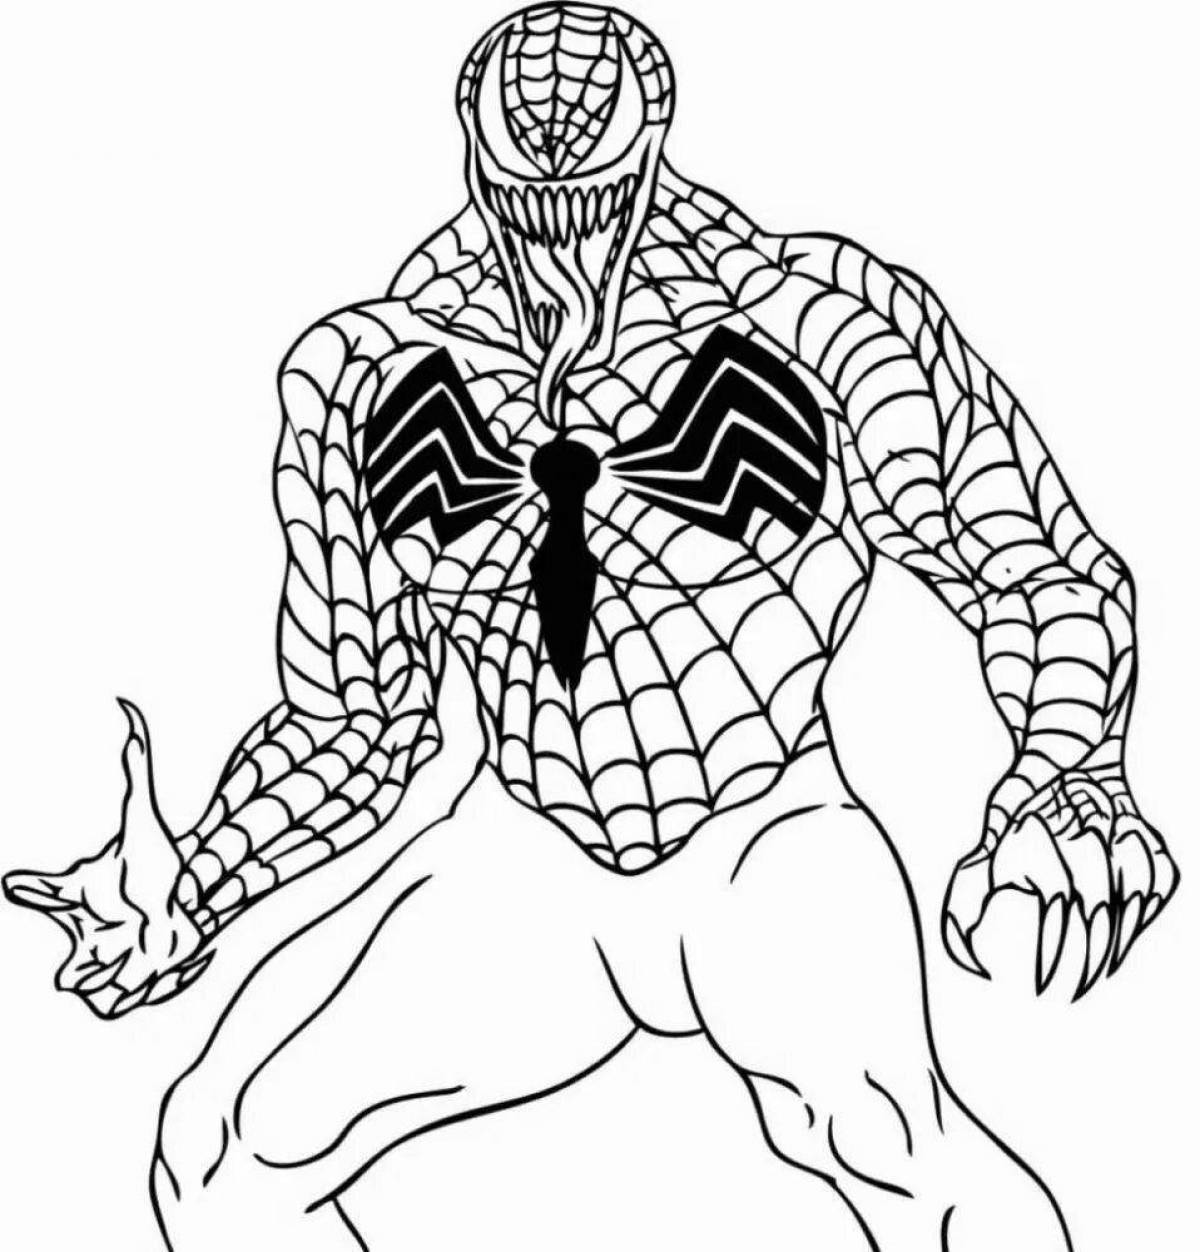 Splendid venom vs spiderman coloring page